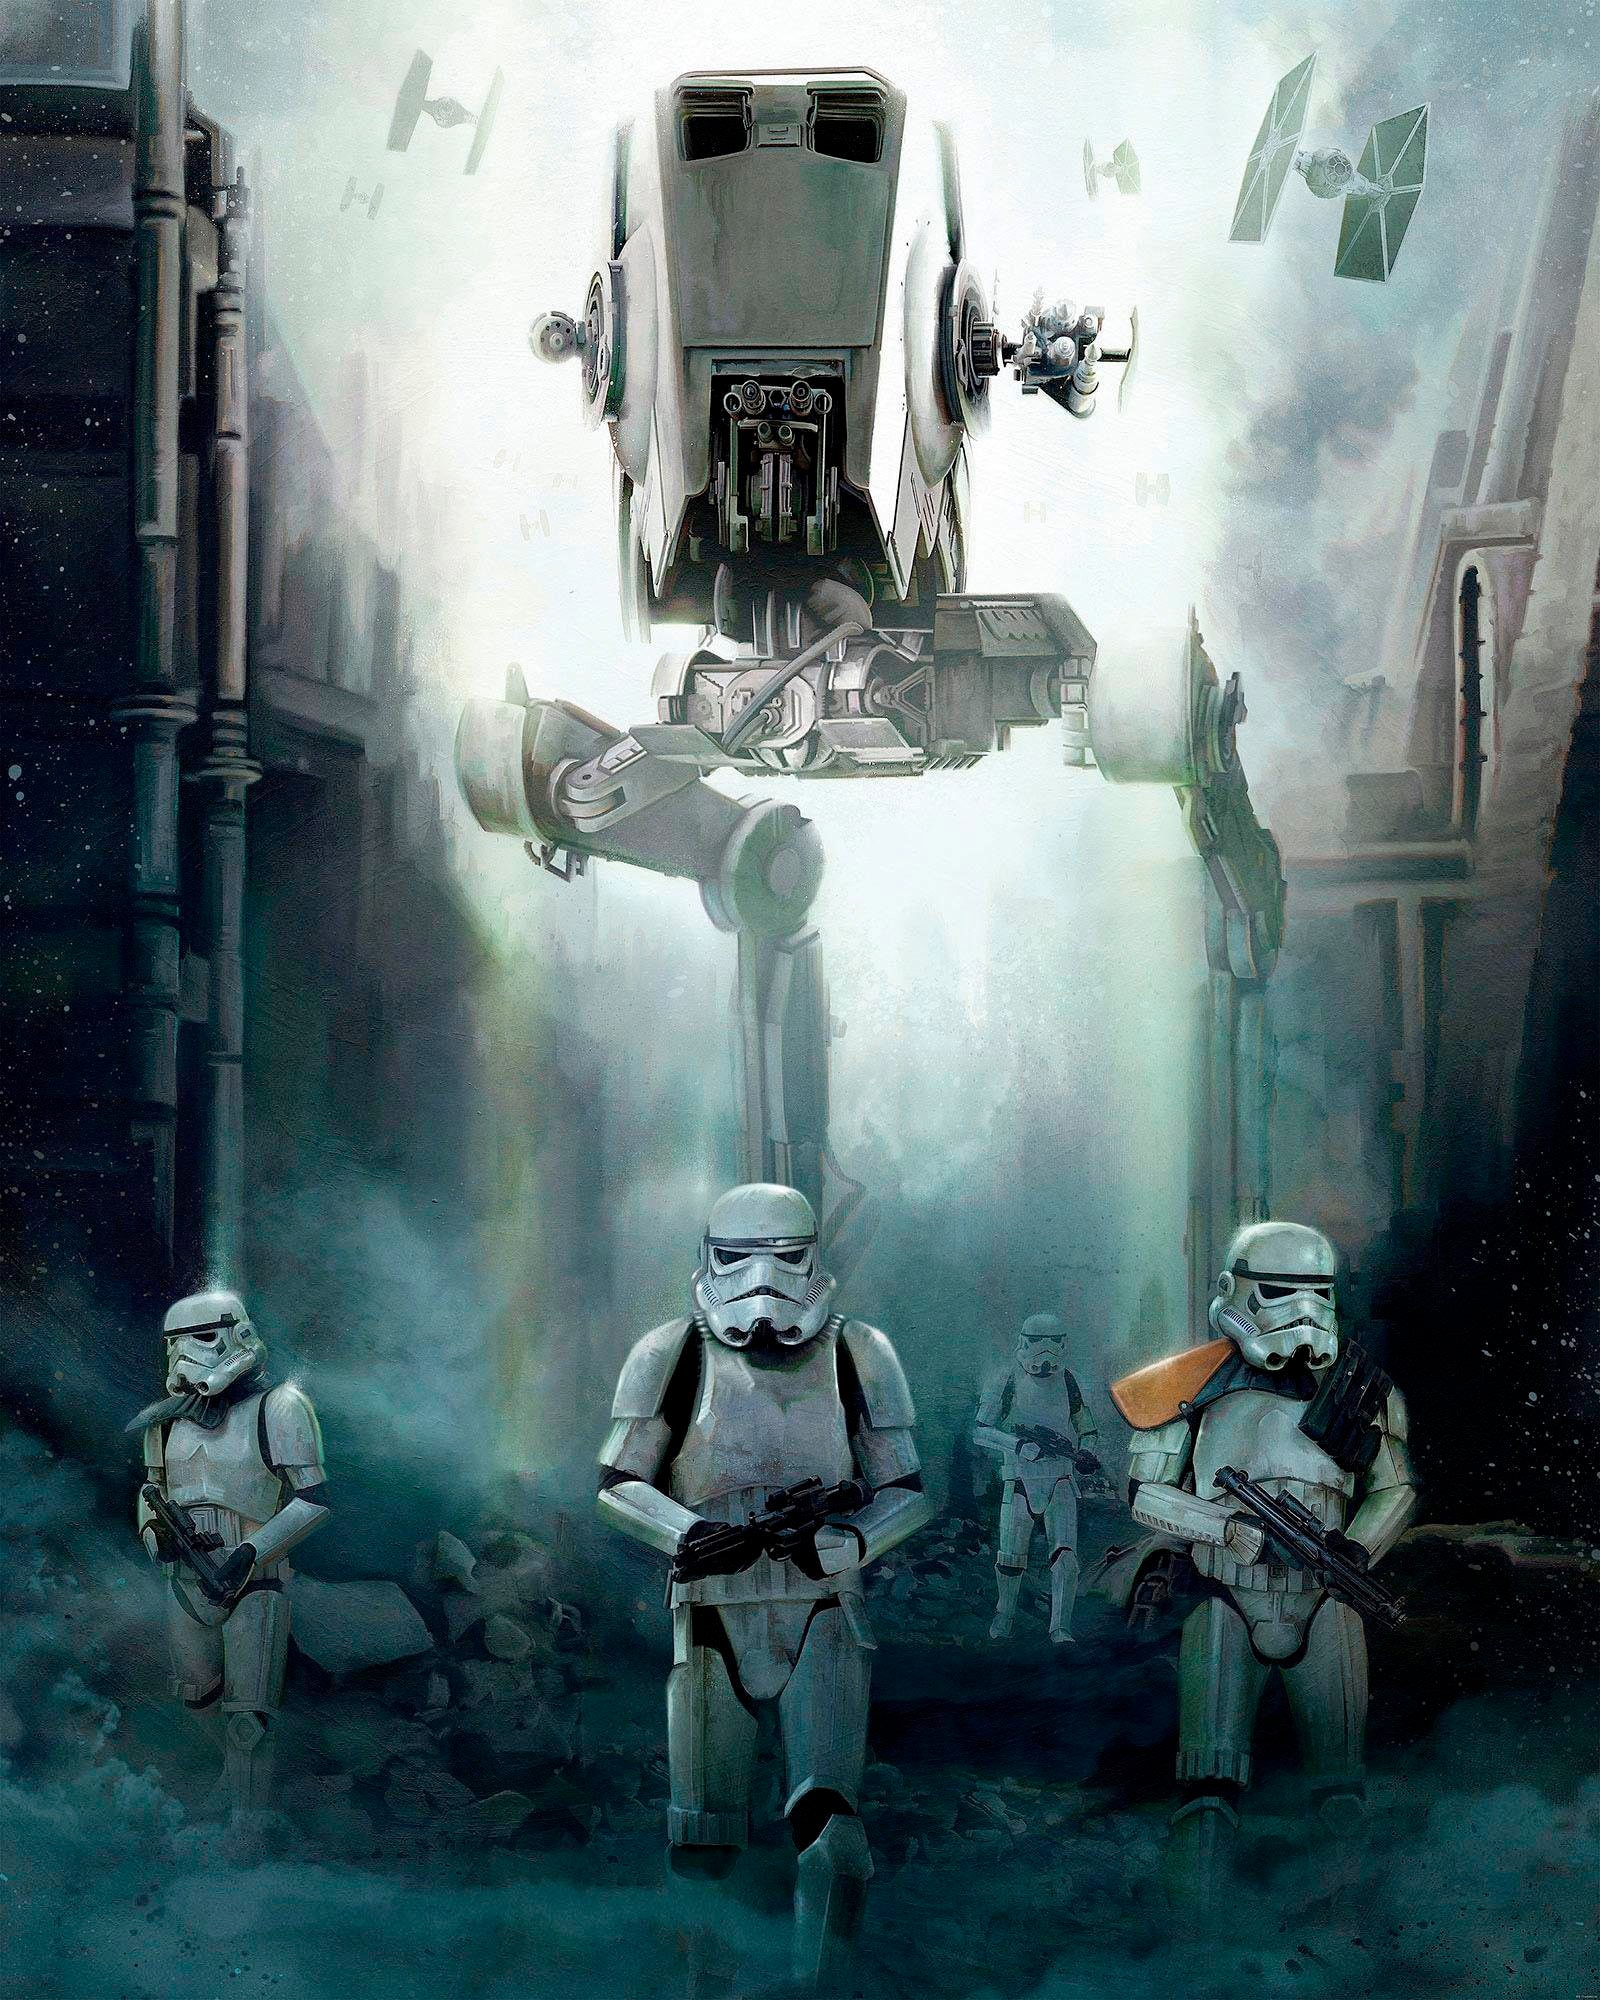 Komar Vliestapete "Star Wars Imperial Forces" von Komar